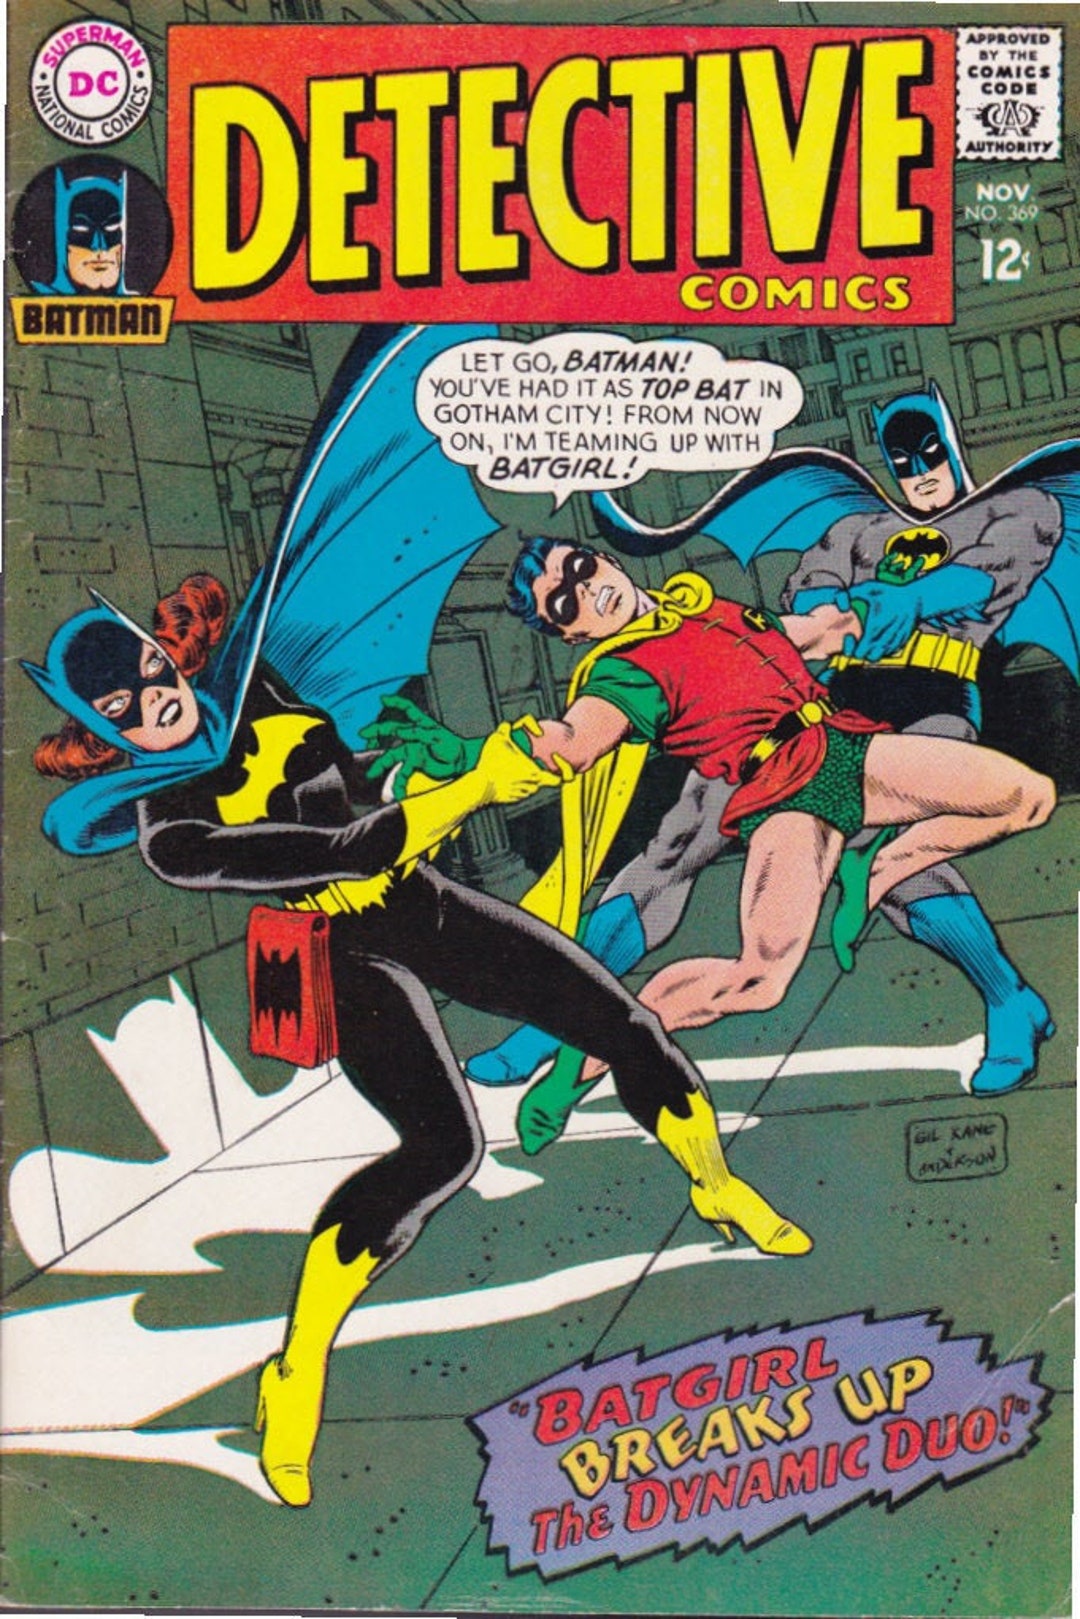 Detective Comics 369 DC Batman Batgirl Catwoman Elogated Man - Etsy